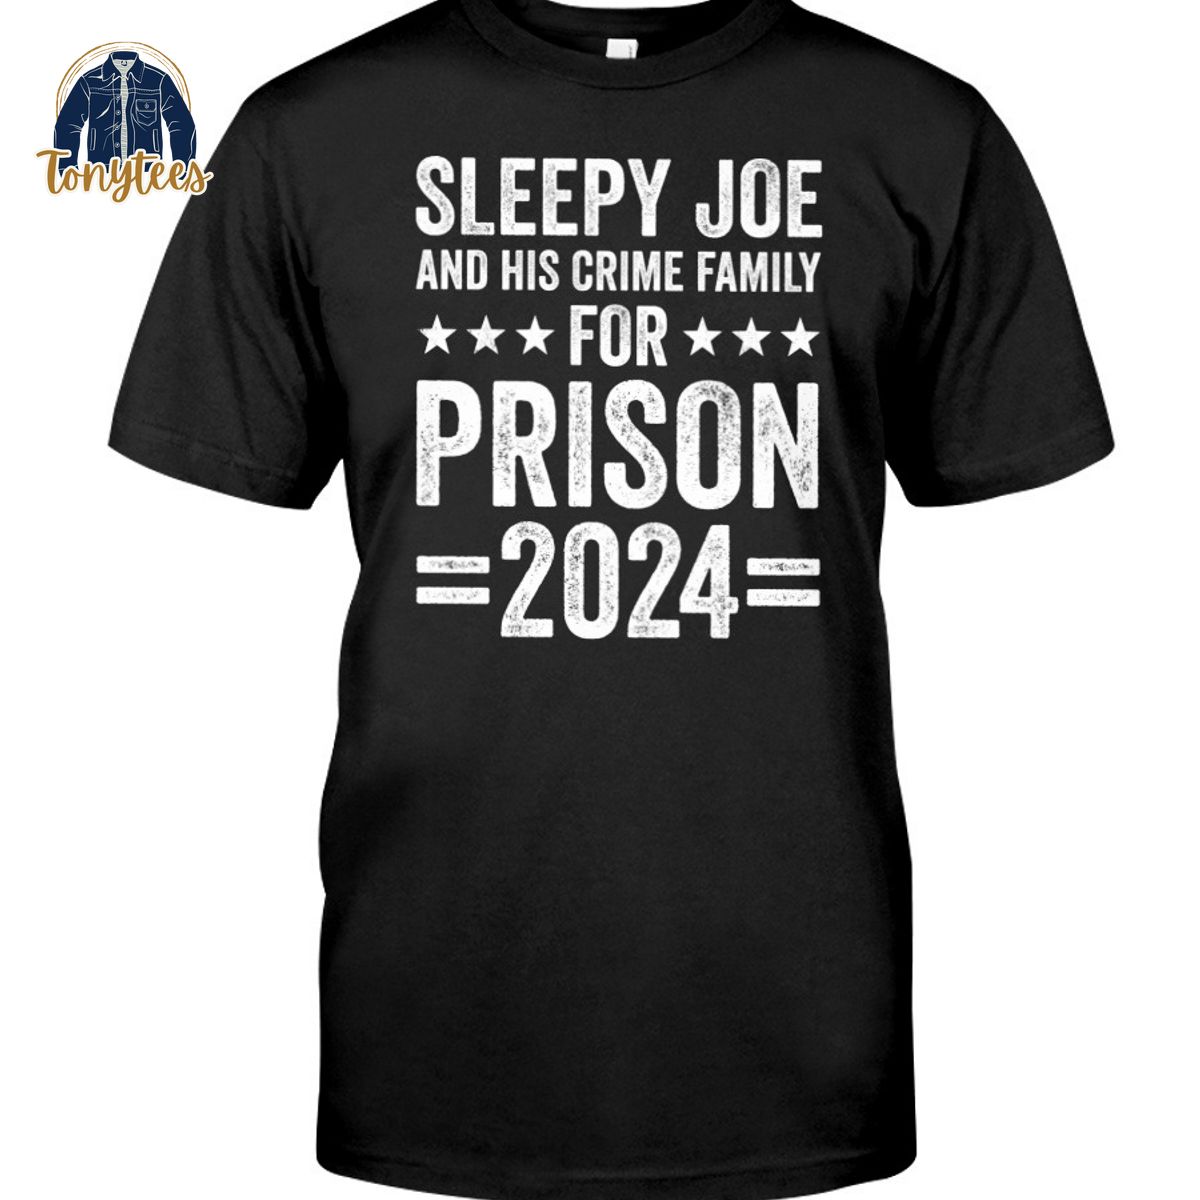 Sleepy Joe and his crime family for prison 2024 shirt